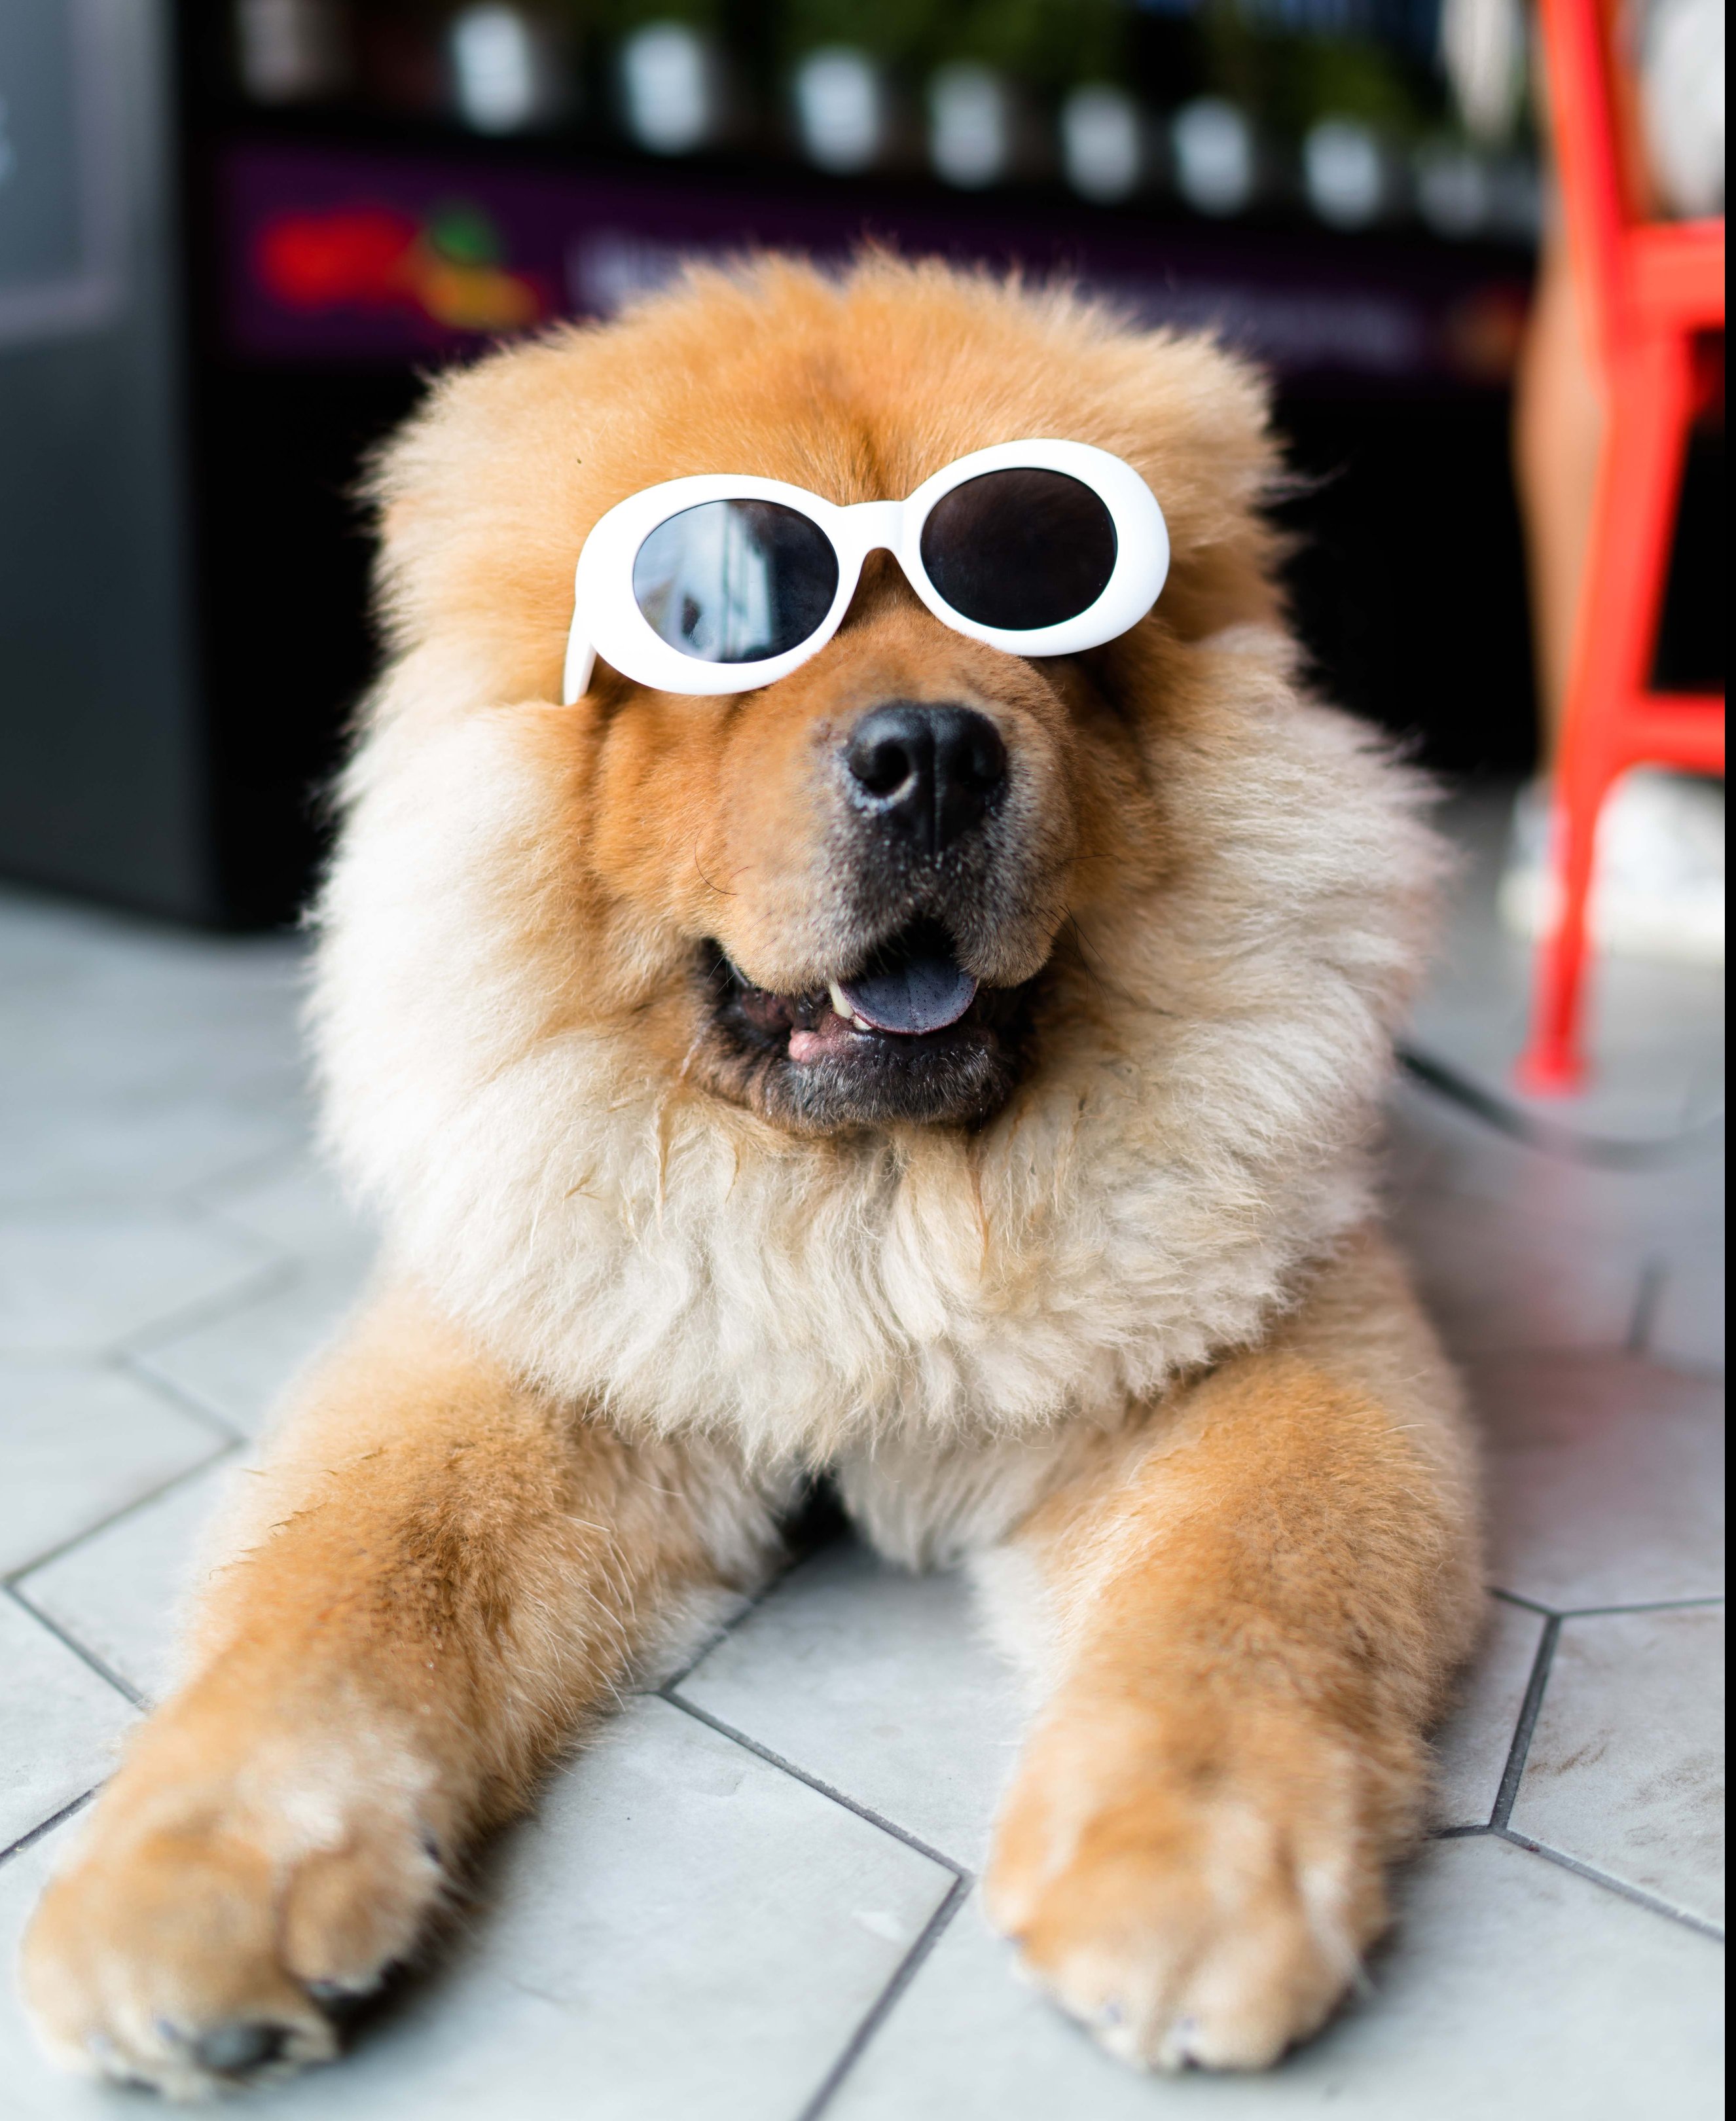 Alan King unsplash dog with glasses